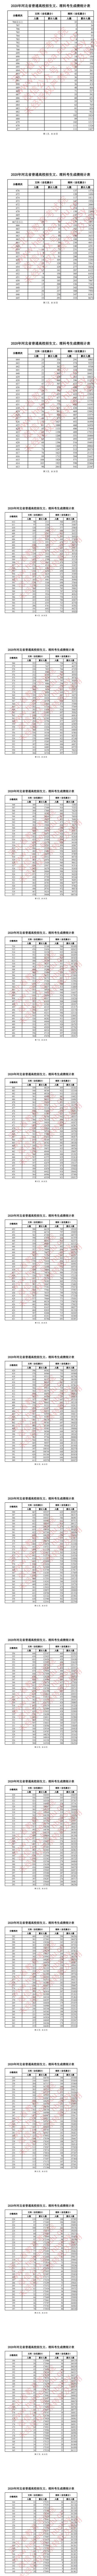 2020年河北省普通高校招生文、理科考生成绩统计表